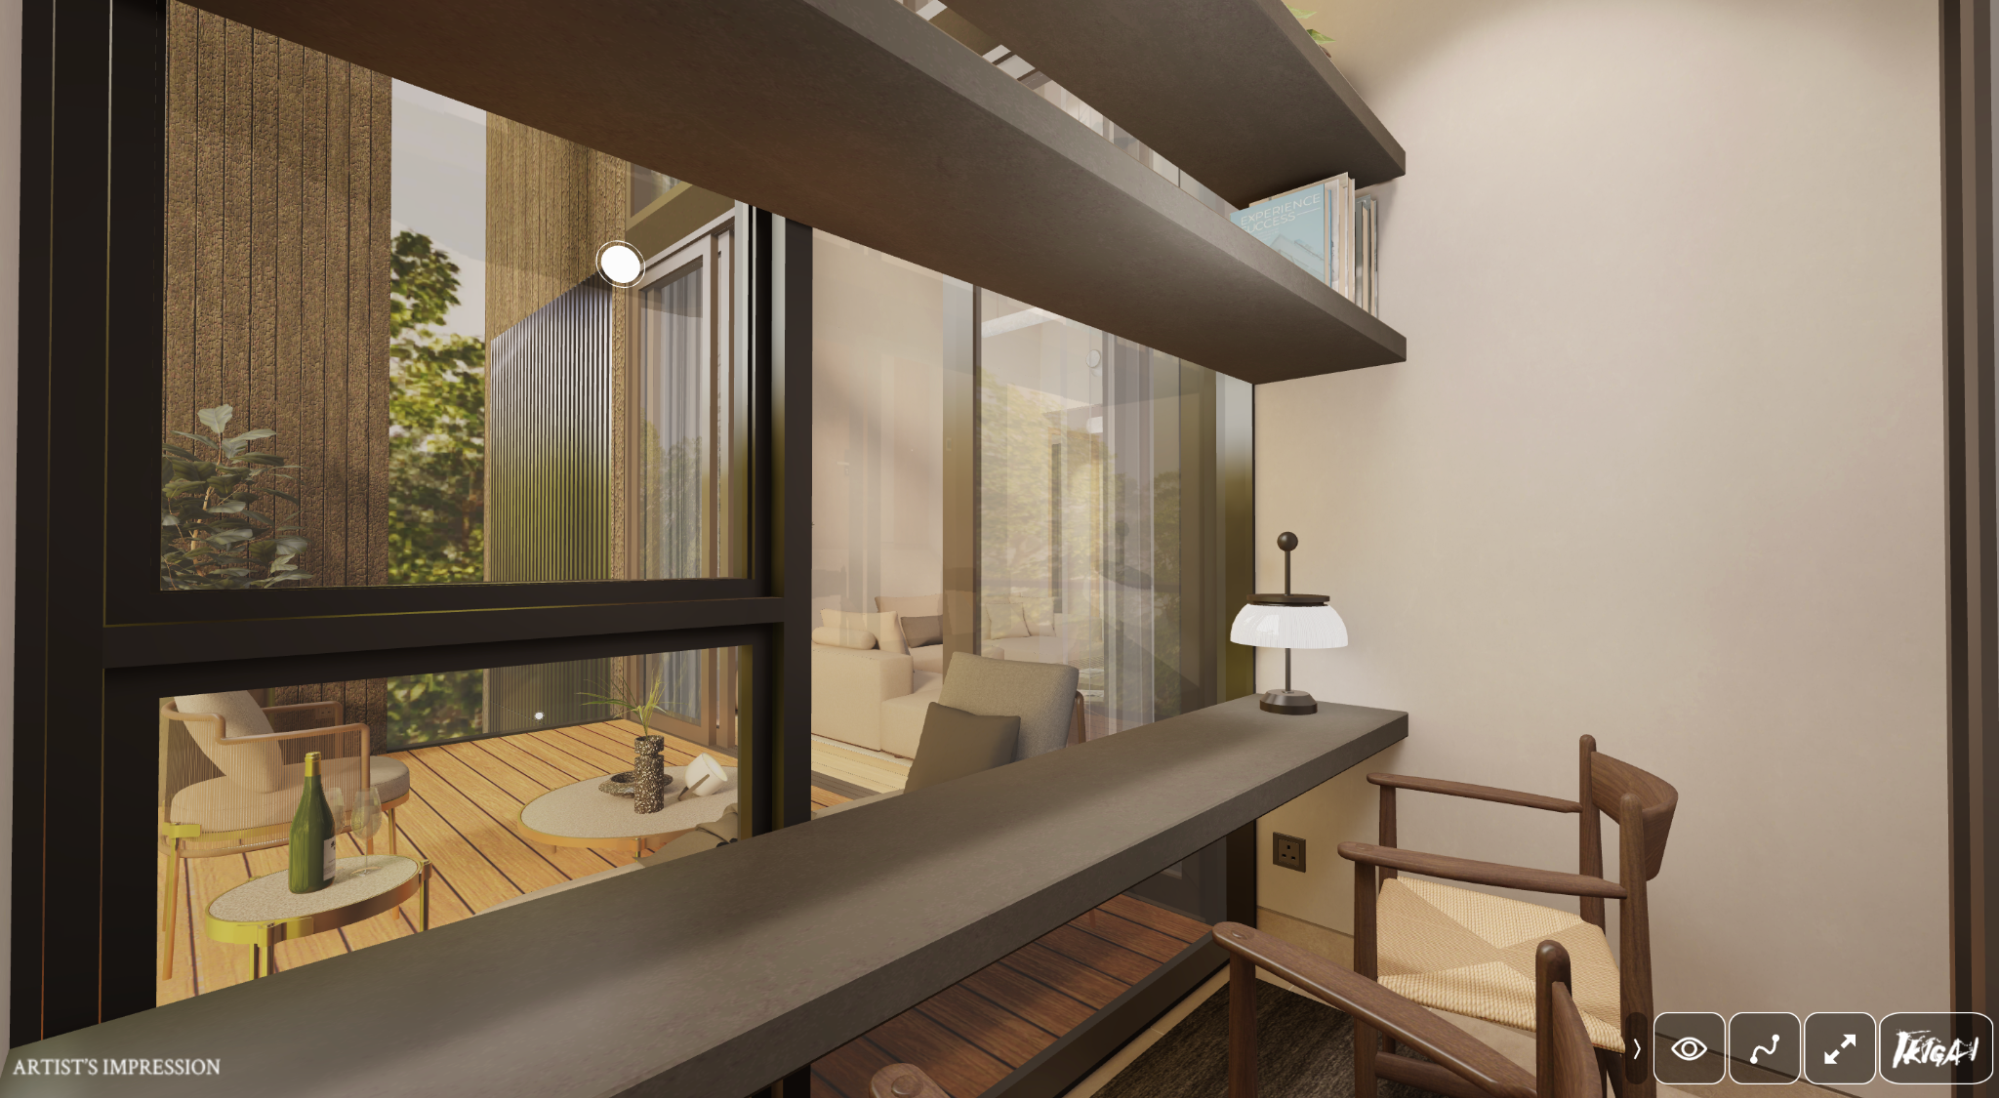 Ikigai 3 Bedroom PenthouseType C2 Study Room Facing the Balcony